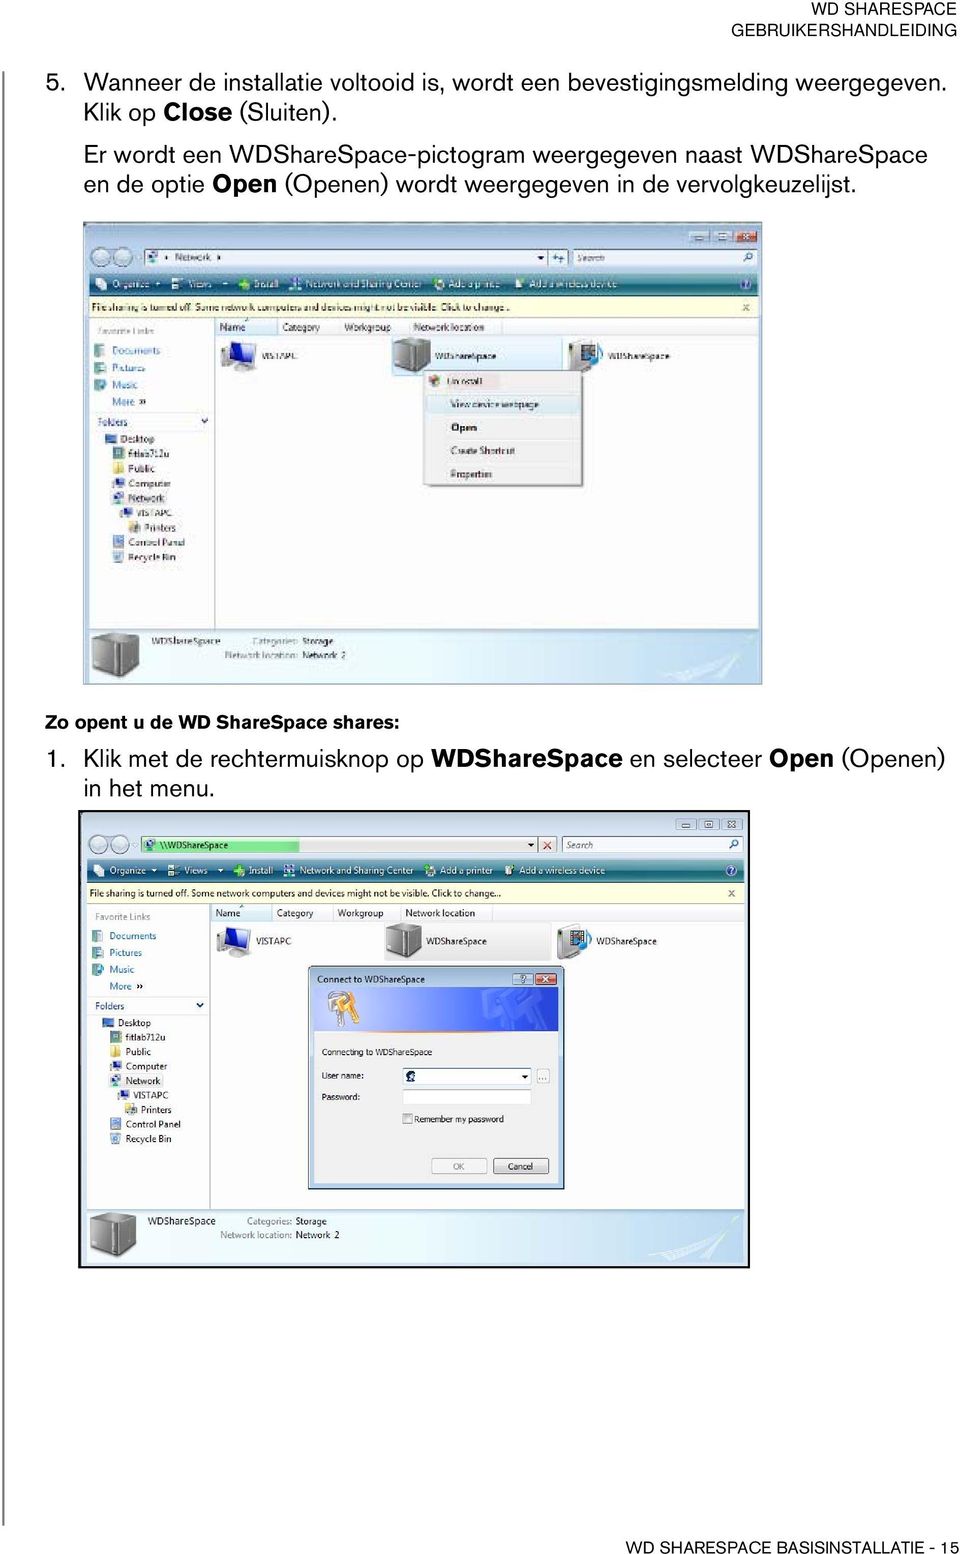 Er wordt een WDShareSpace-pictogram weergegeven naast WDShareSpace en de optie Open (Openen) wordt